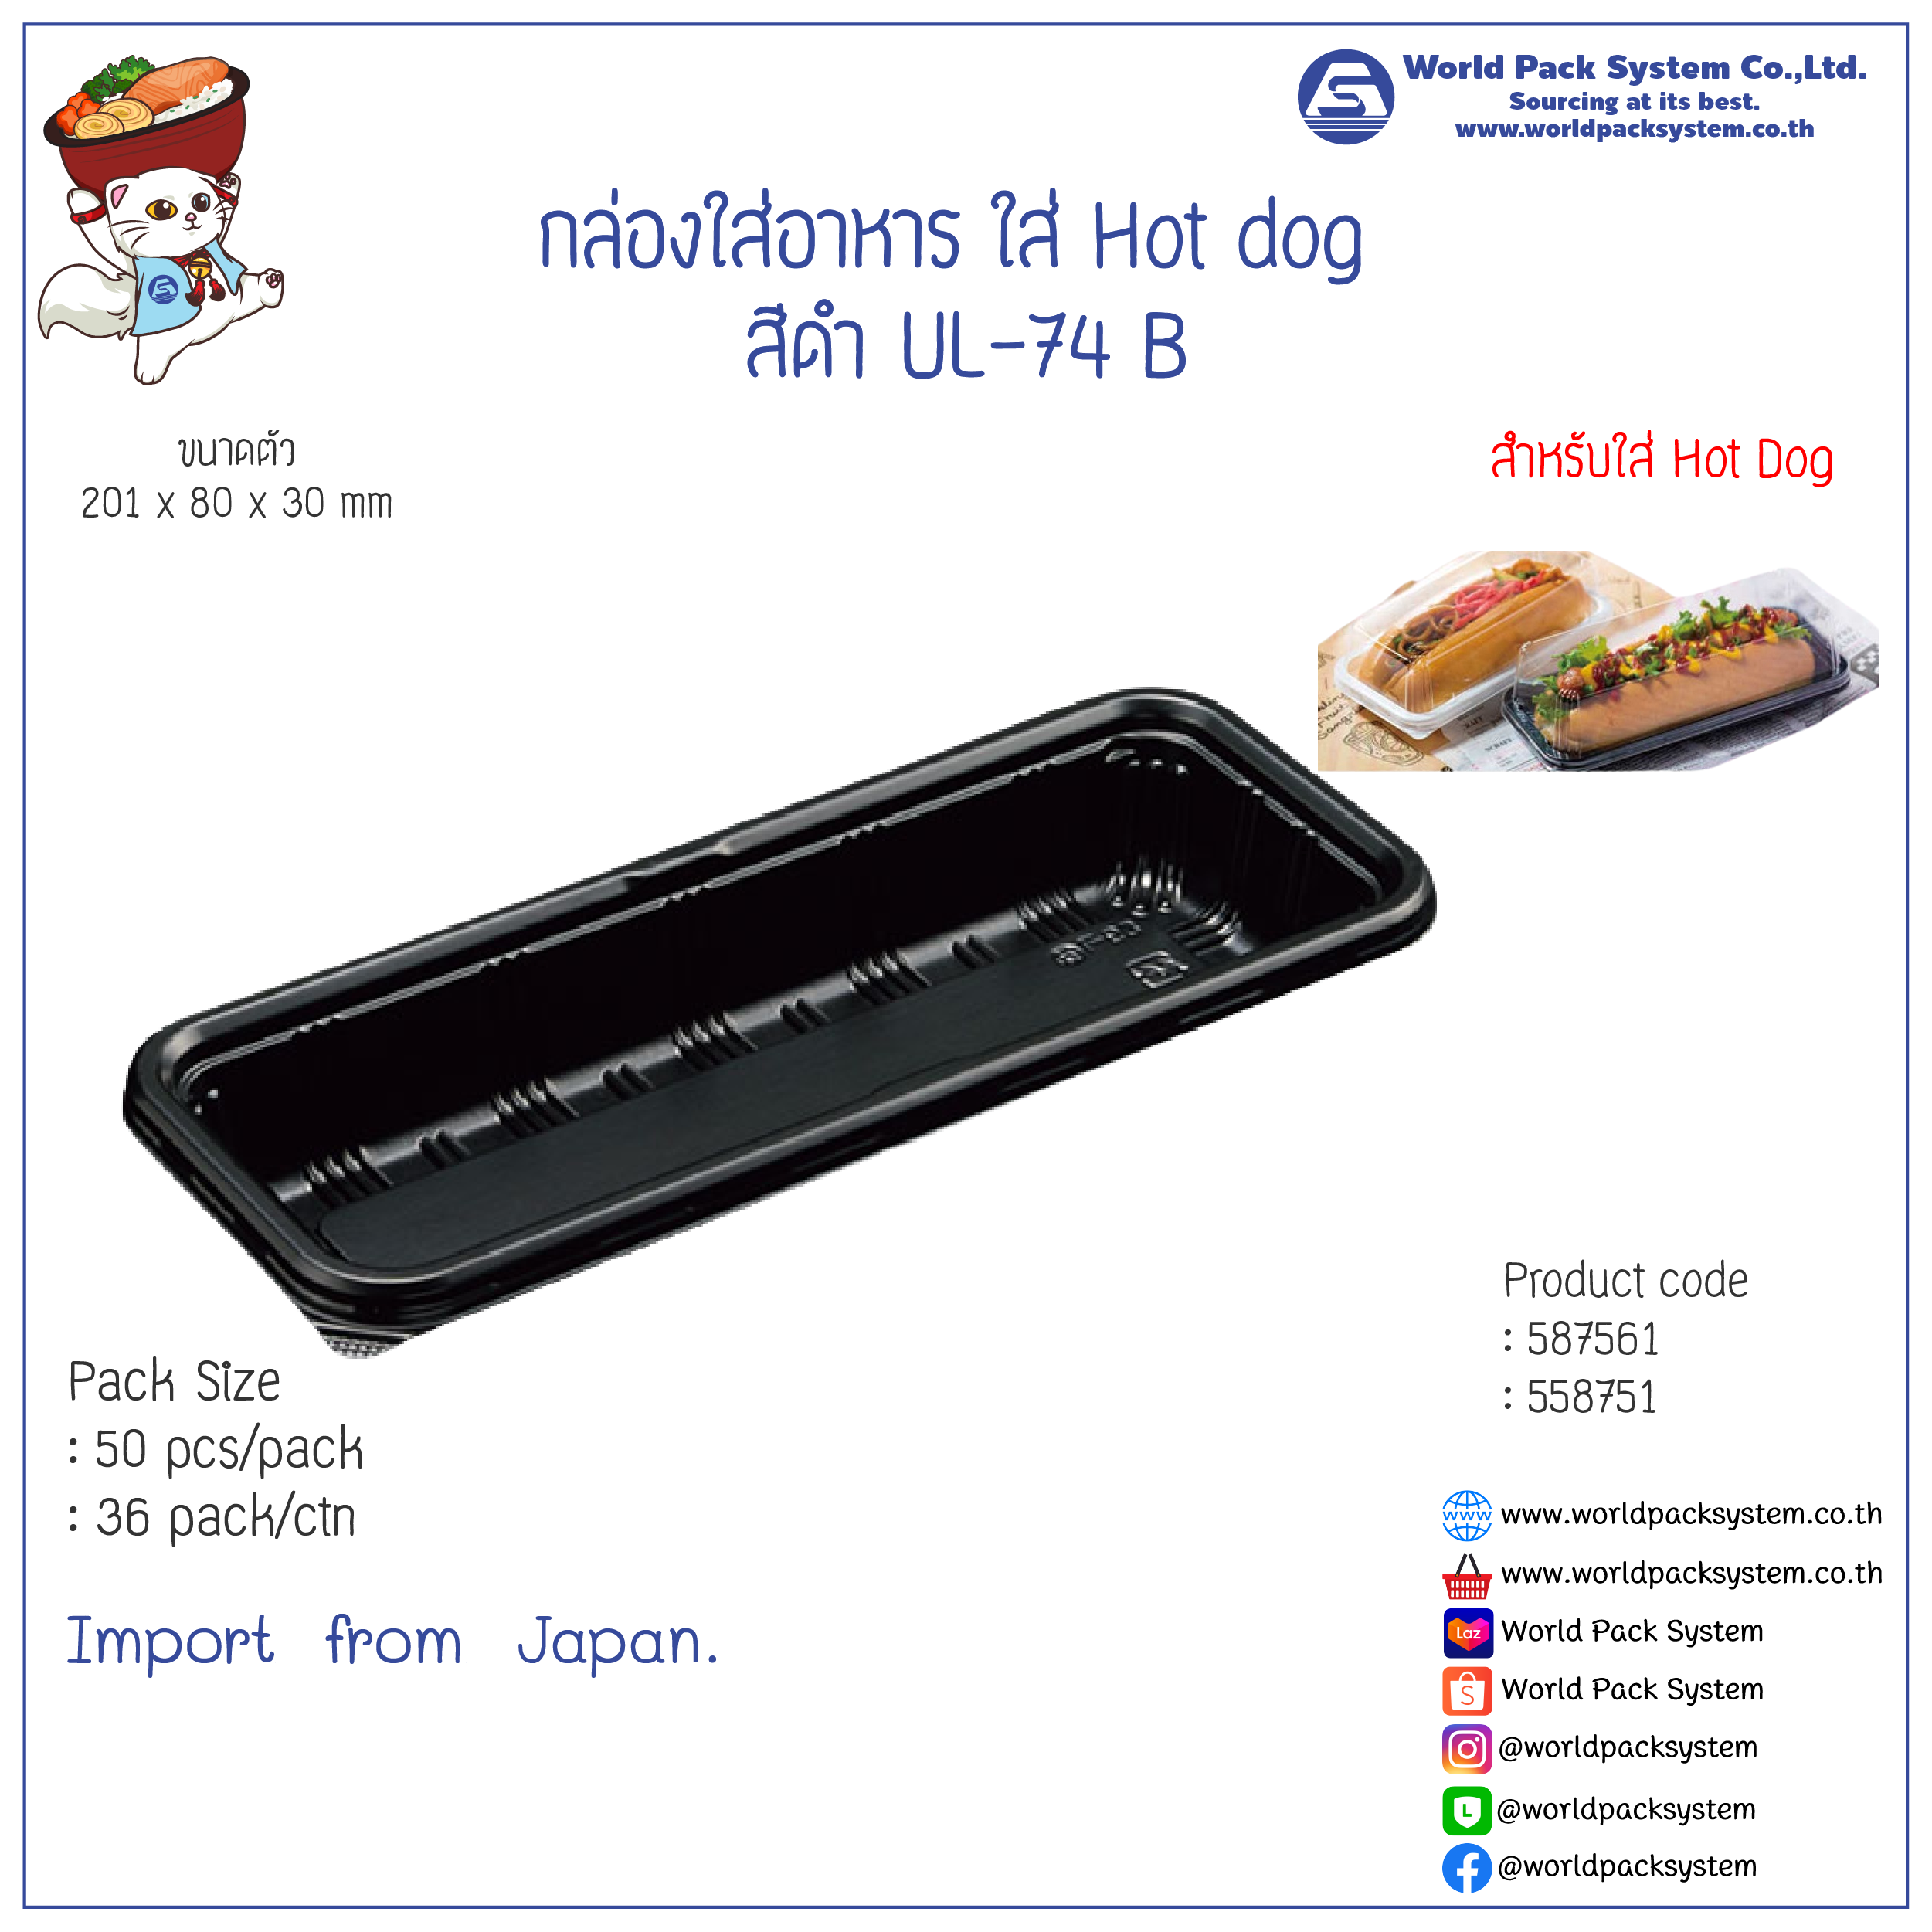 กล่องใส่อาหาร กล่องใส่ Hot Dog สีดำ FUL-74 (50 ชุด)